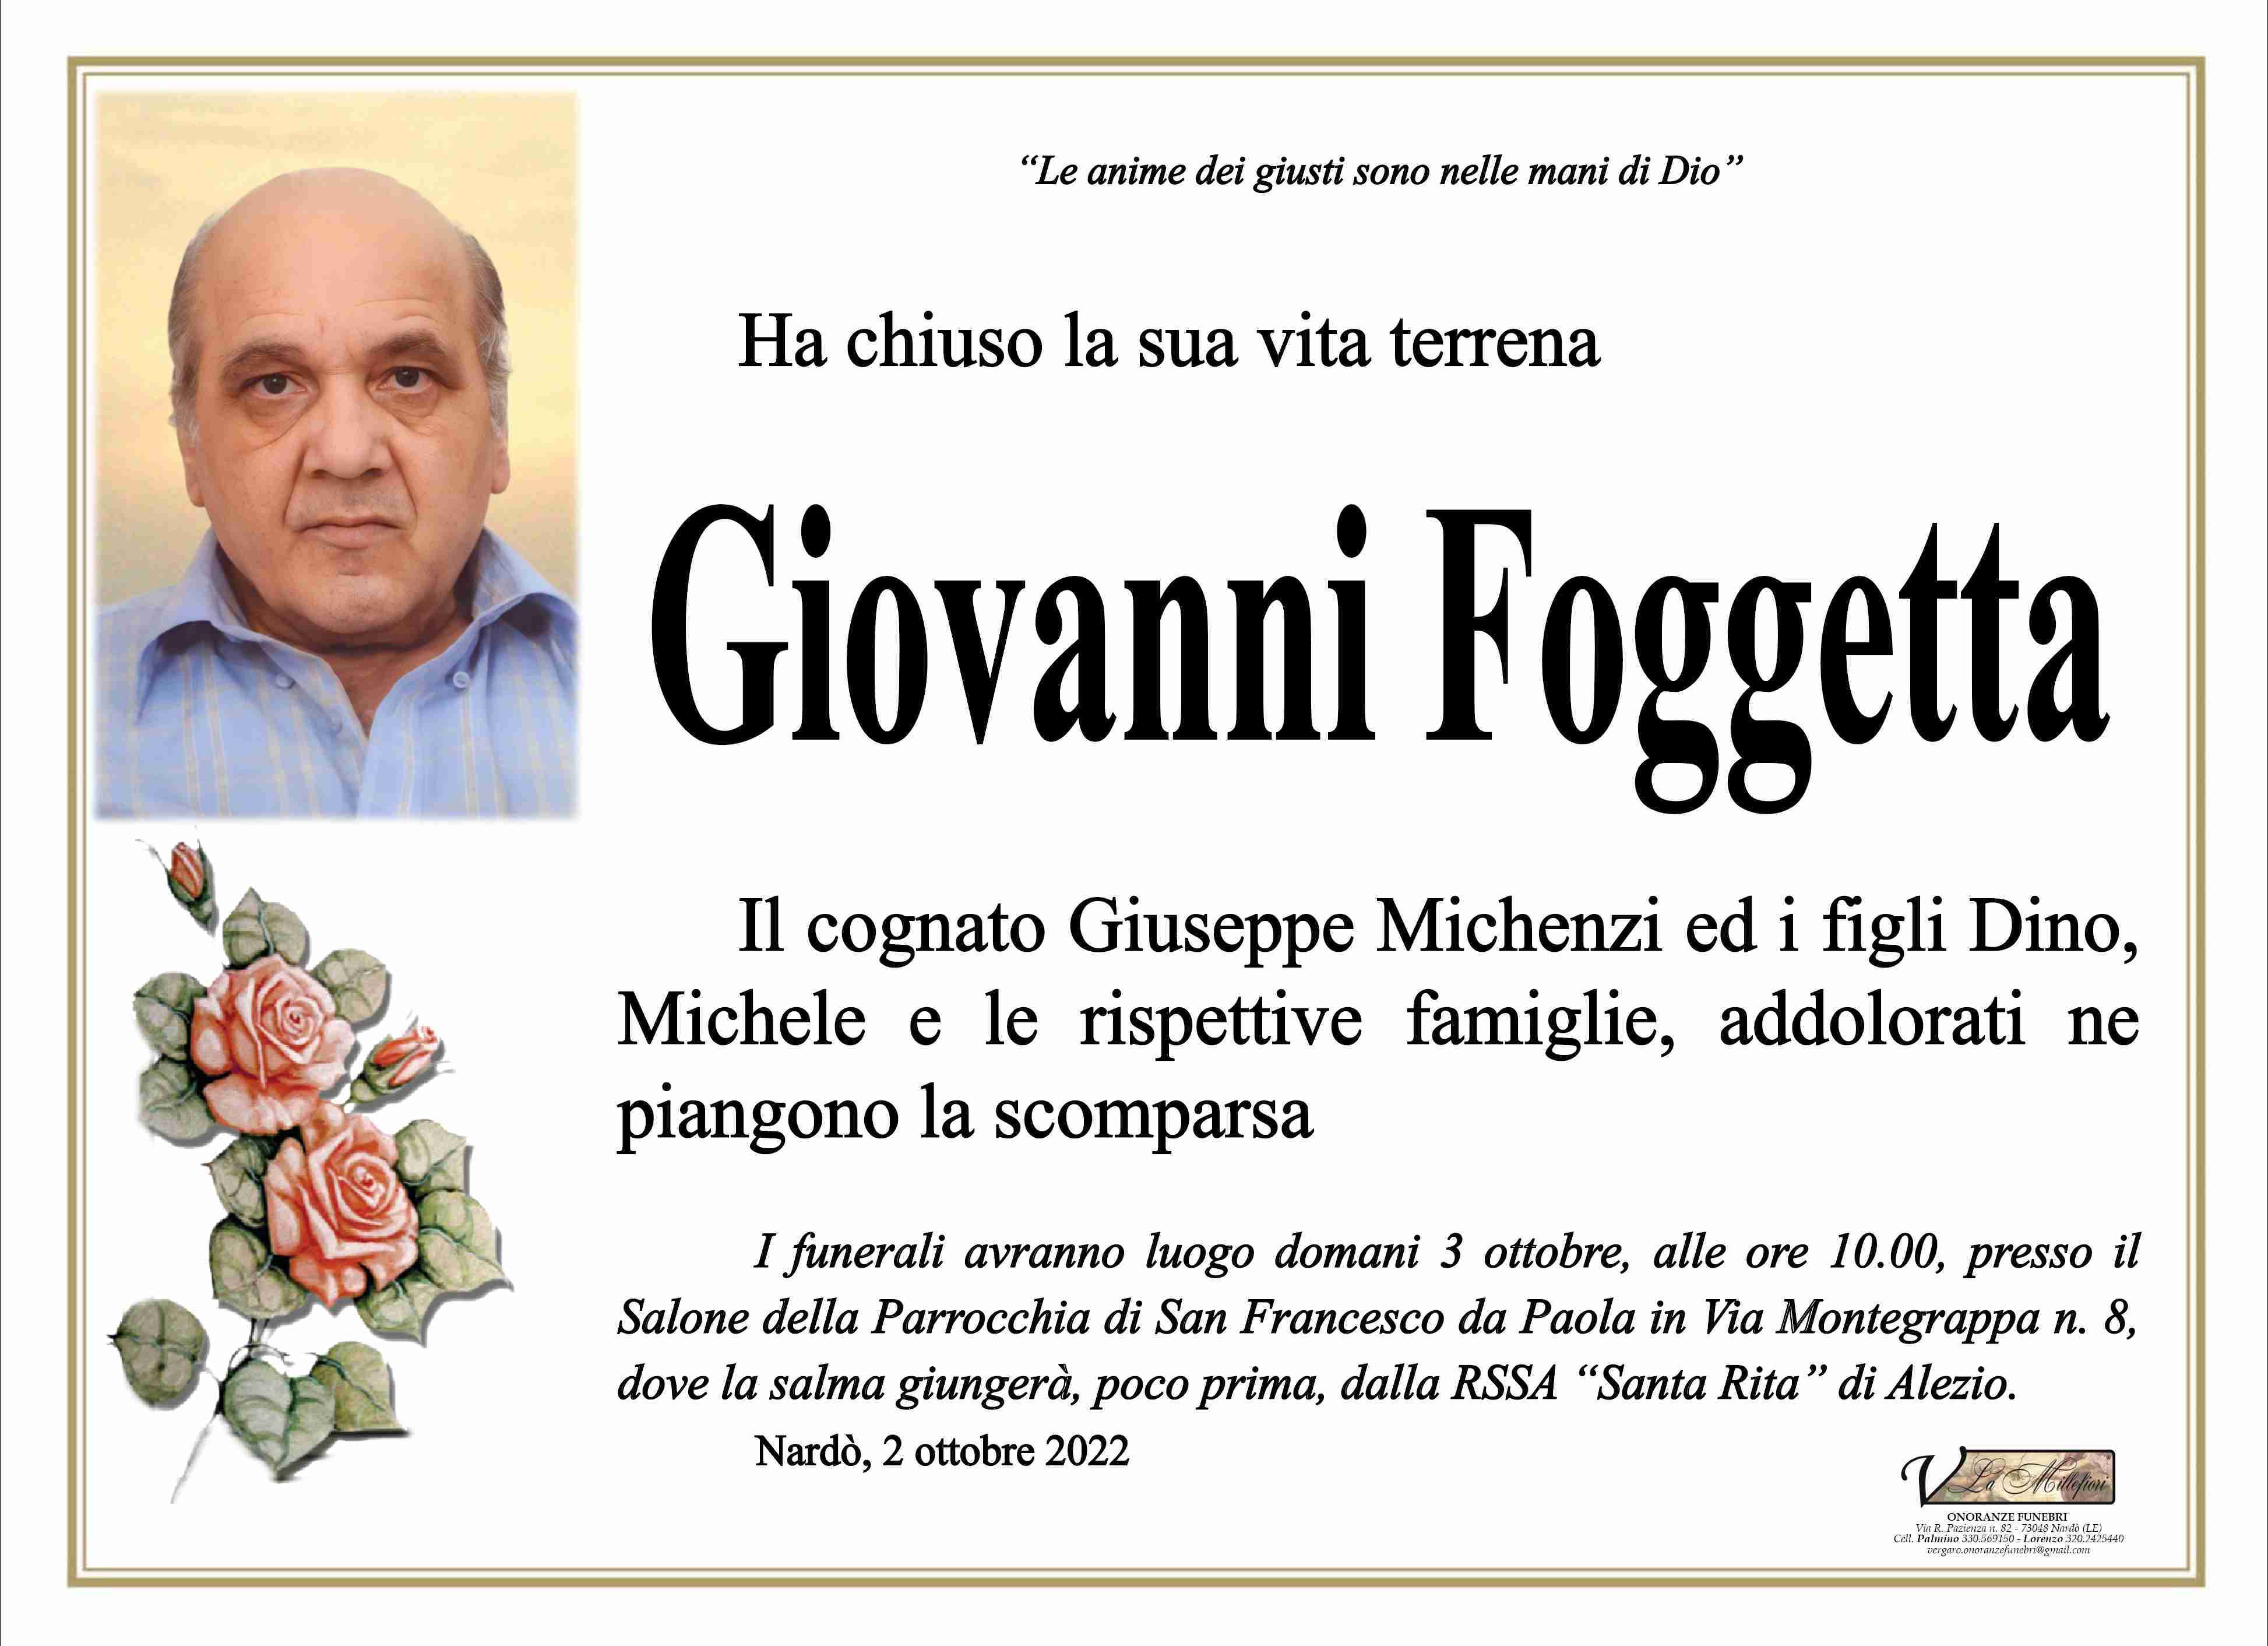 Giovanni Foggetta